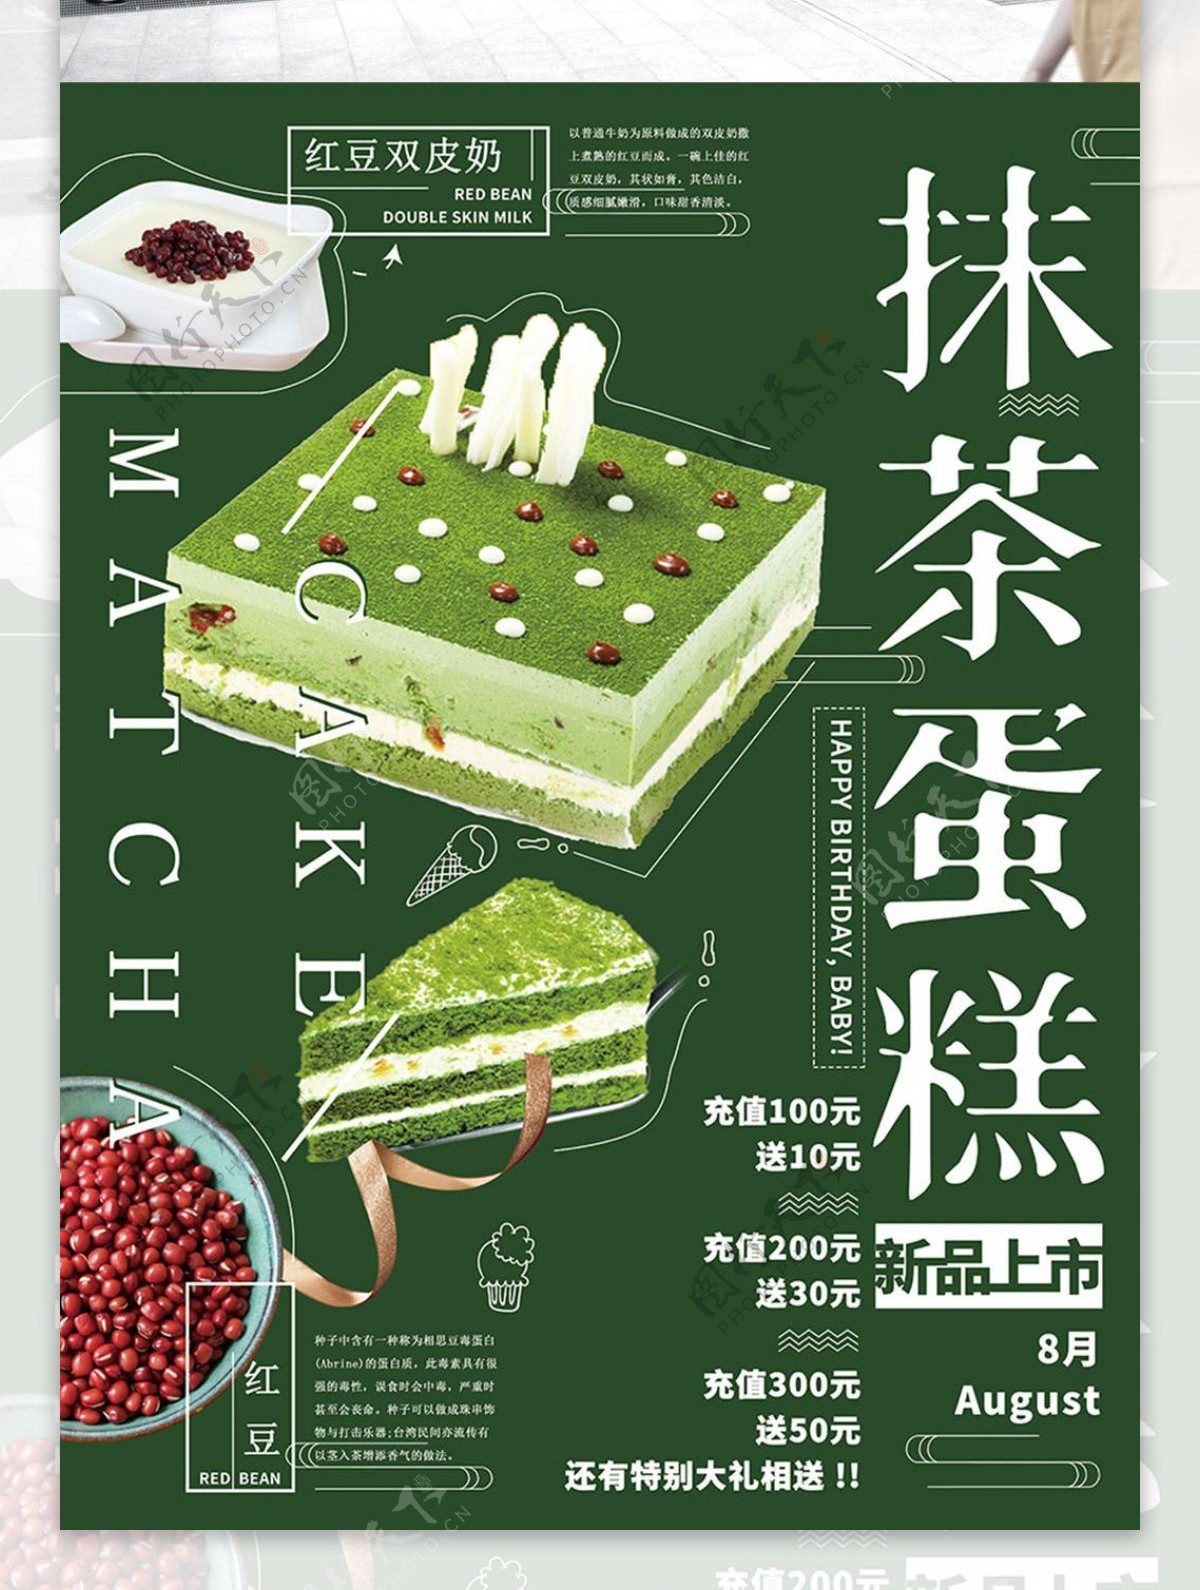 简约绿色美食甜品抹茶蛋糕创意海报